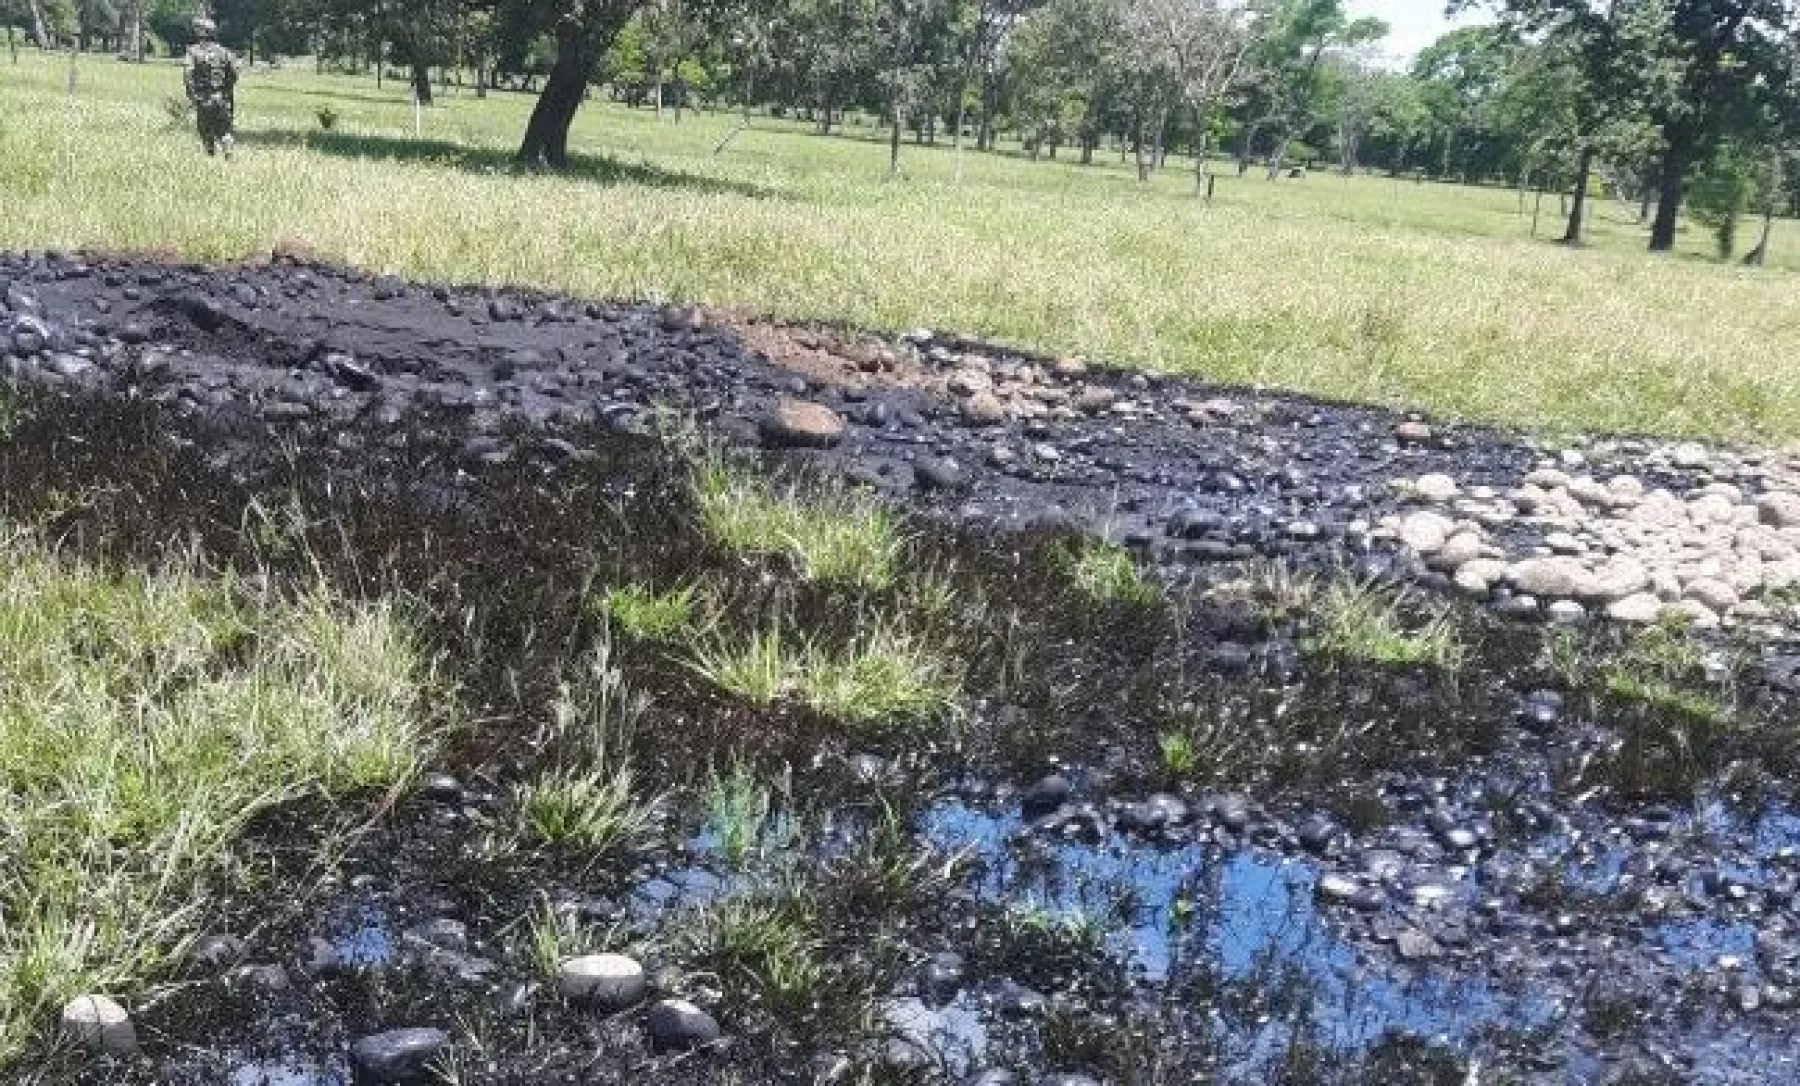 El Atentado al oleoducto Caño Limón Coveñas de Ecopetrol, se presentó a la altura del PK 85, correspondiente a la vereda El Consuelo, provocando derrame de crudo en la vegetación del sector.